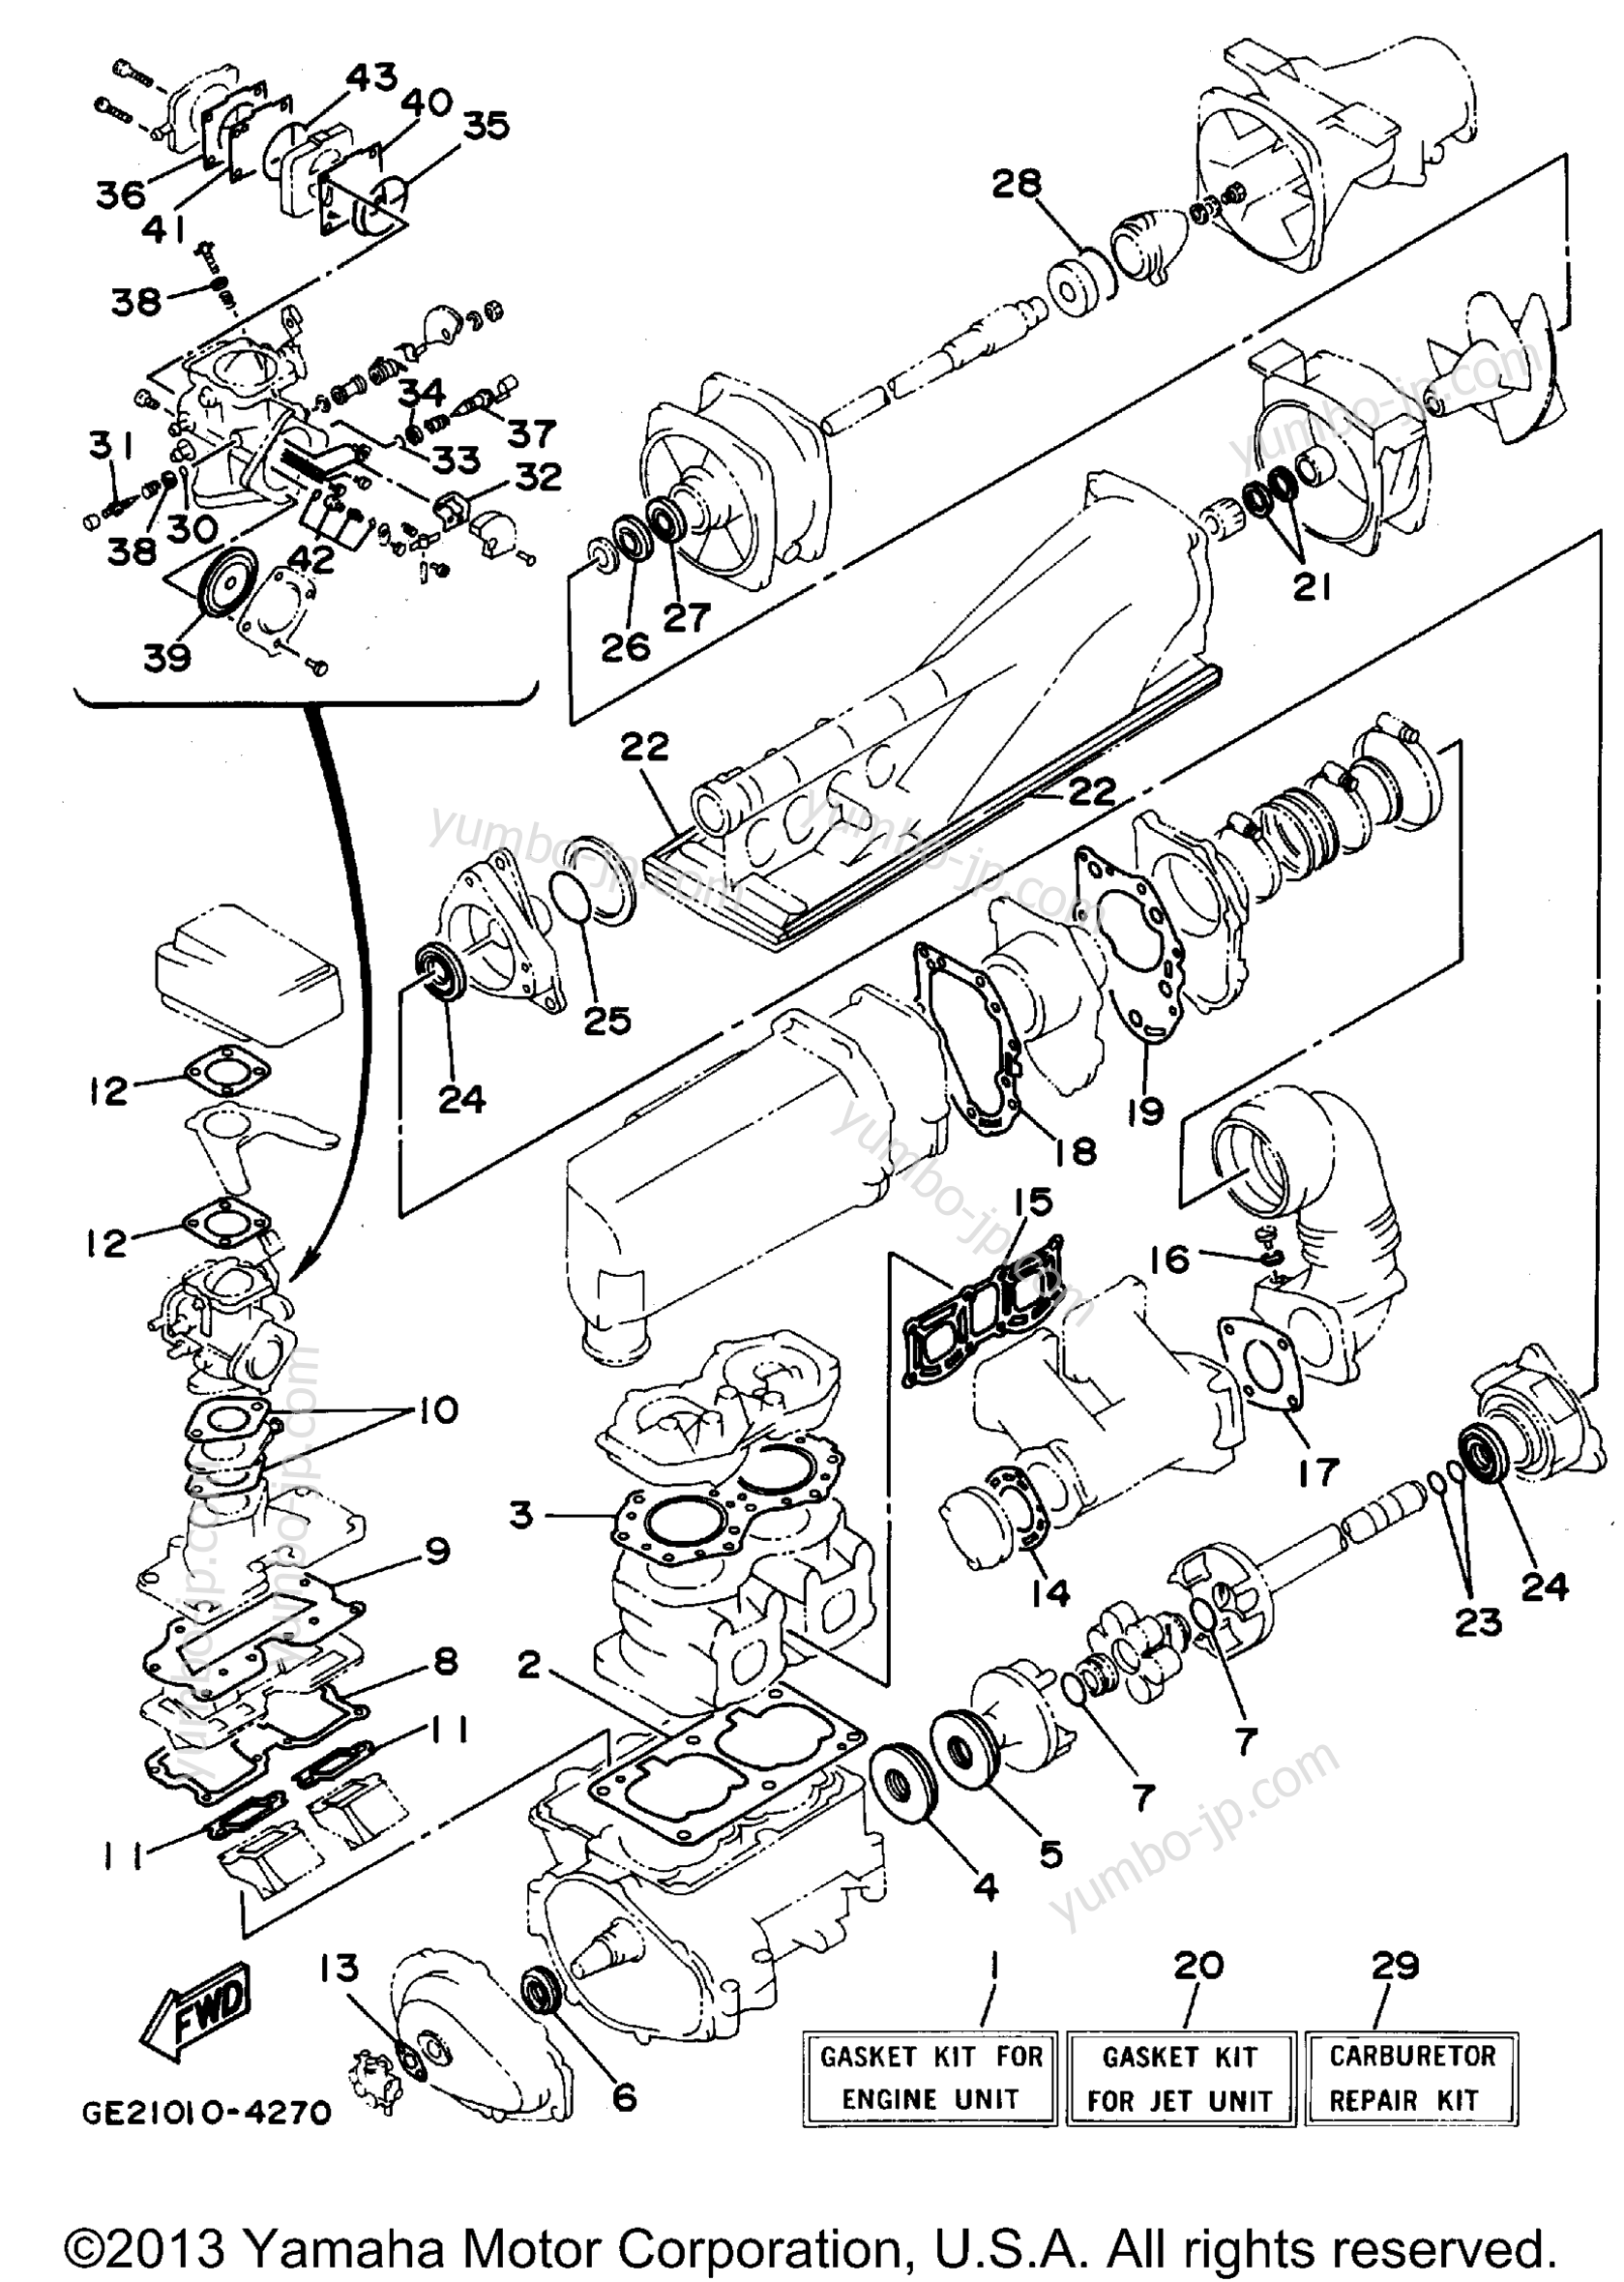 Ремкомплект / Набор прокладок для гидроциклов YAMAHA WAVE RUNNER III GP (WRA700S) 1994 г.